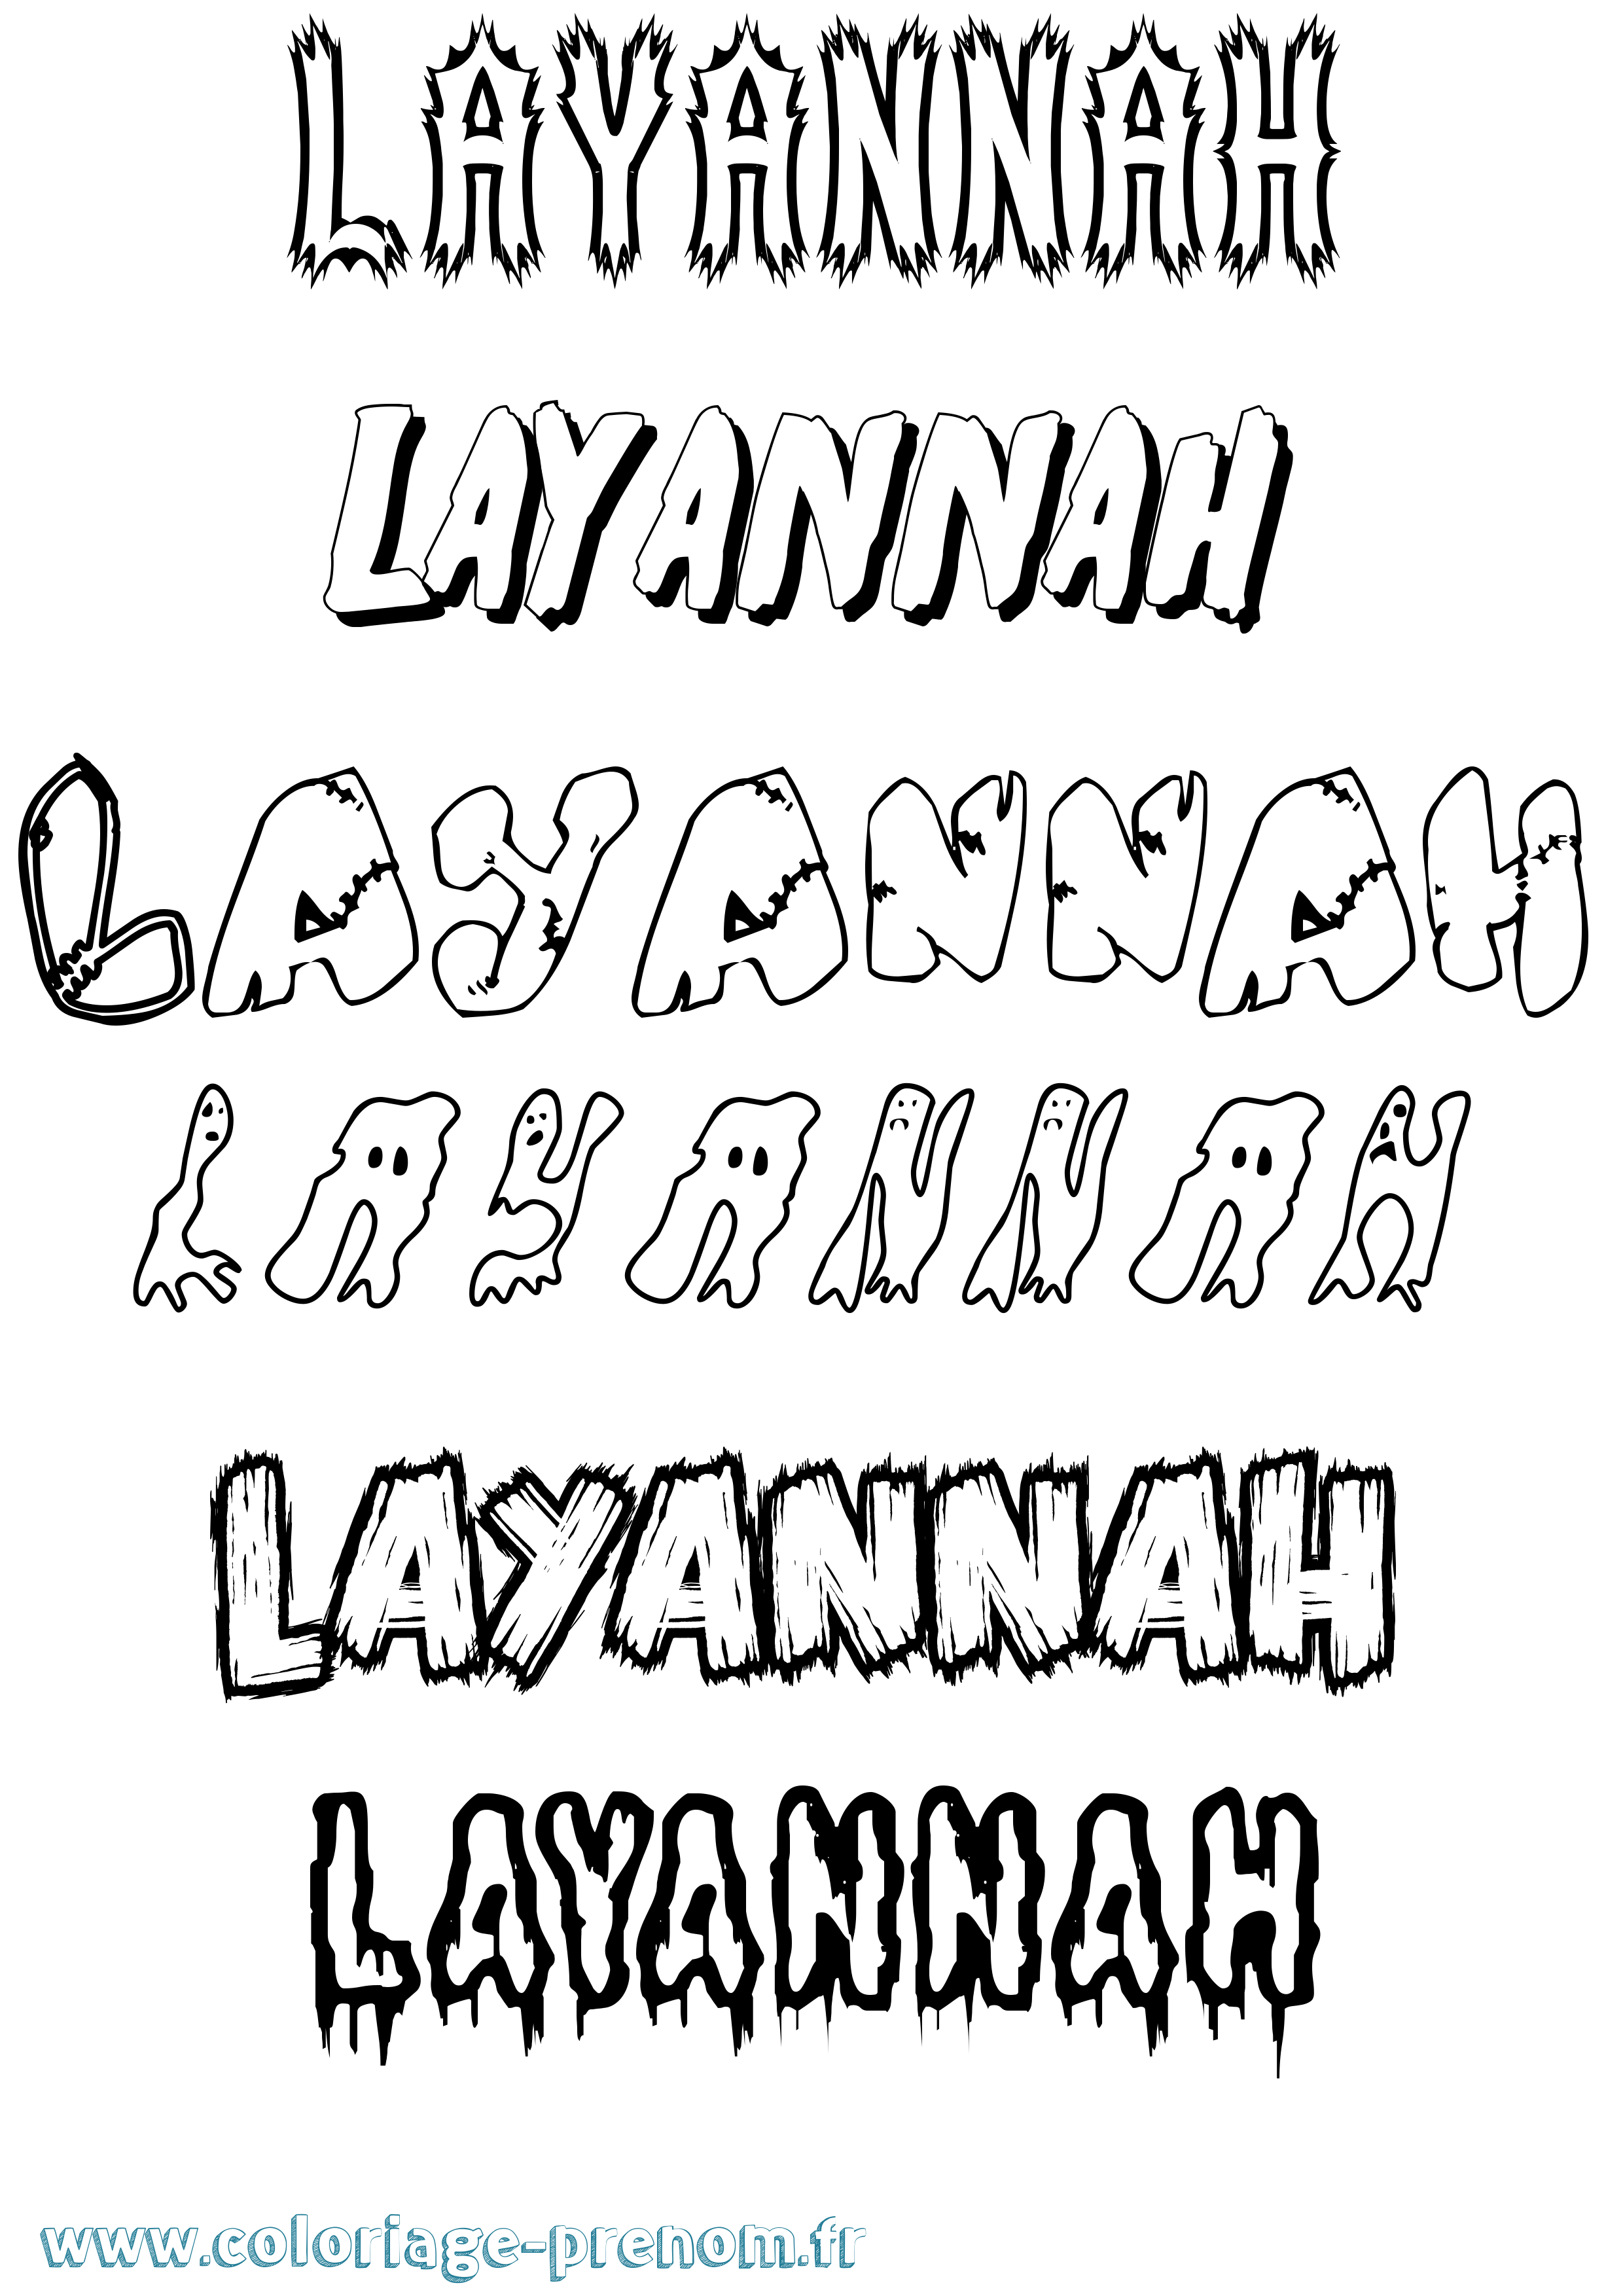 Coloriage prénom Layannah Frisson